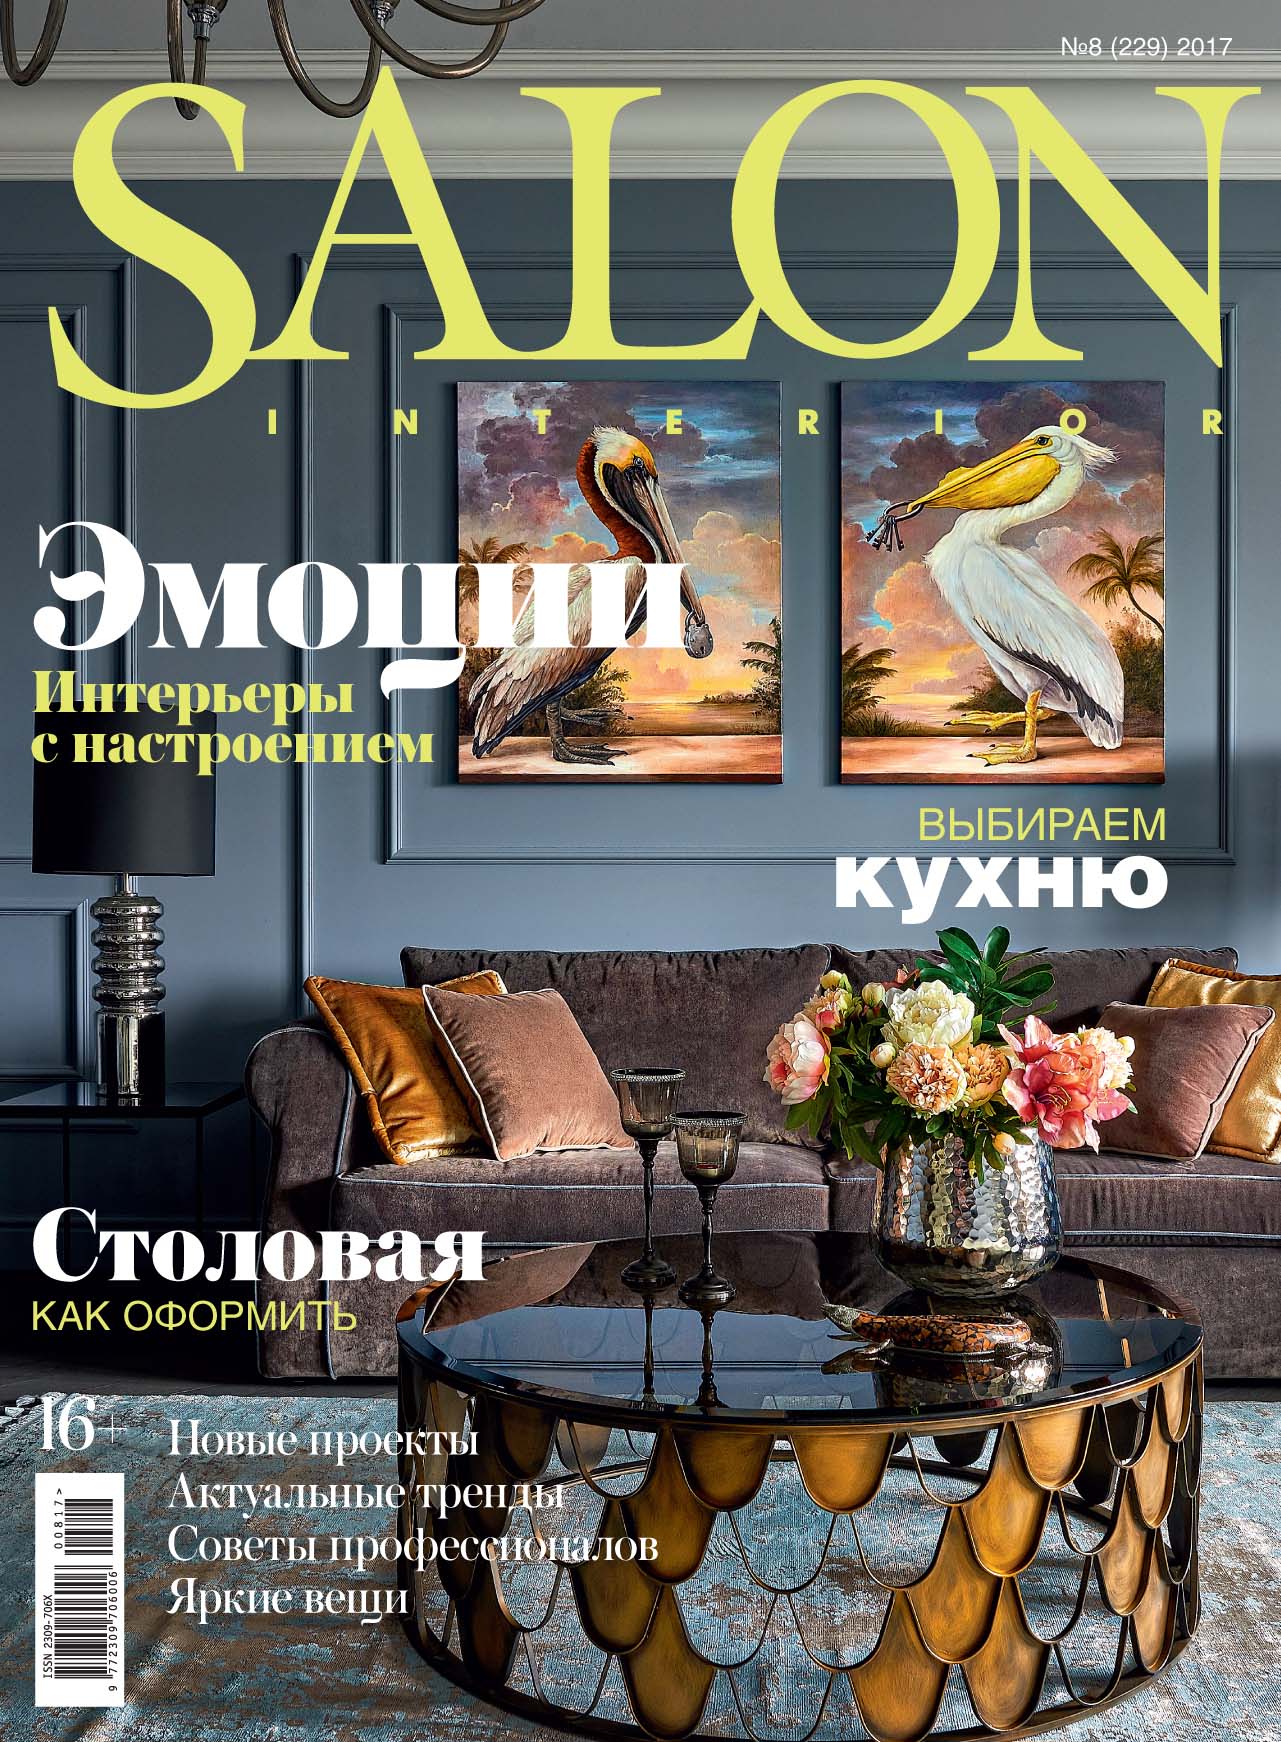 Публикация в журнале "SALON-interior" №8 (229) 2017